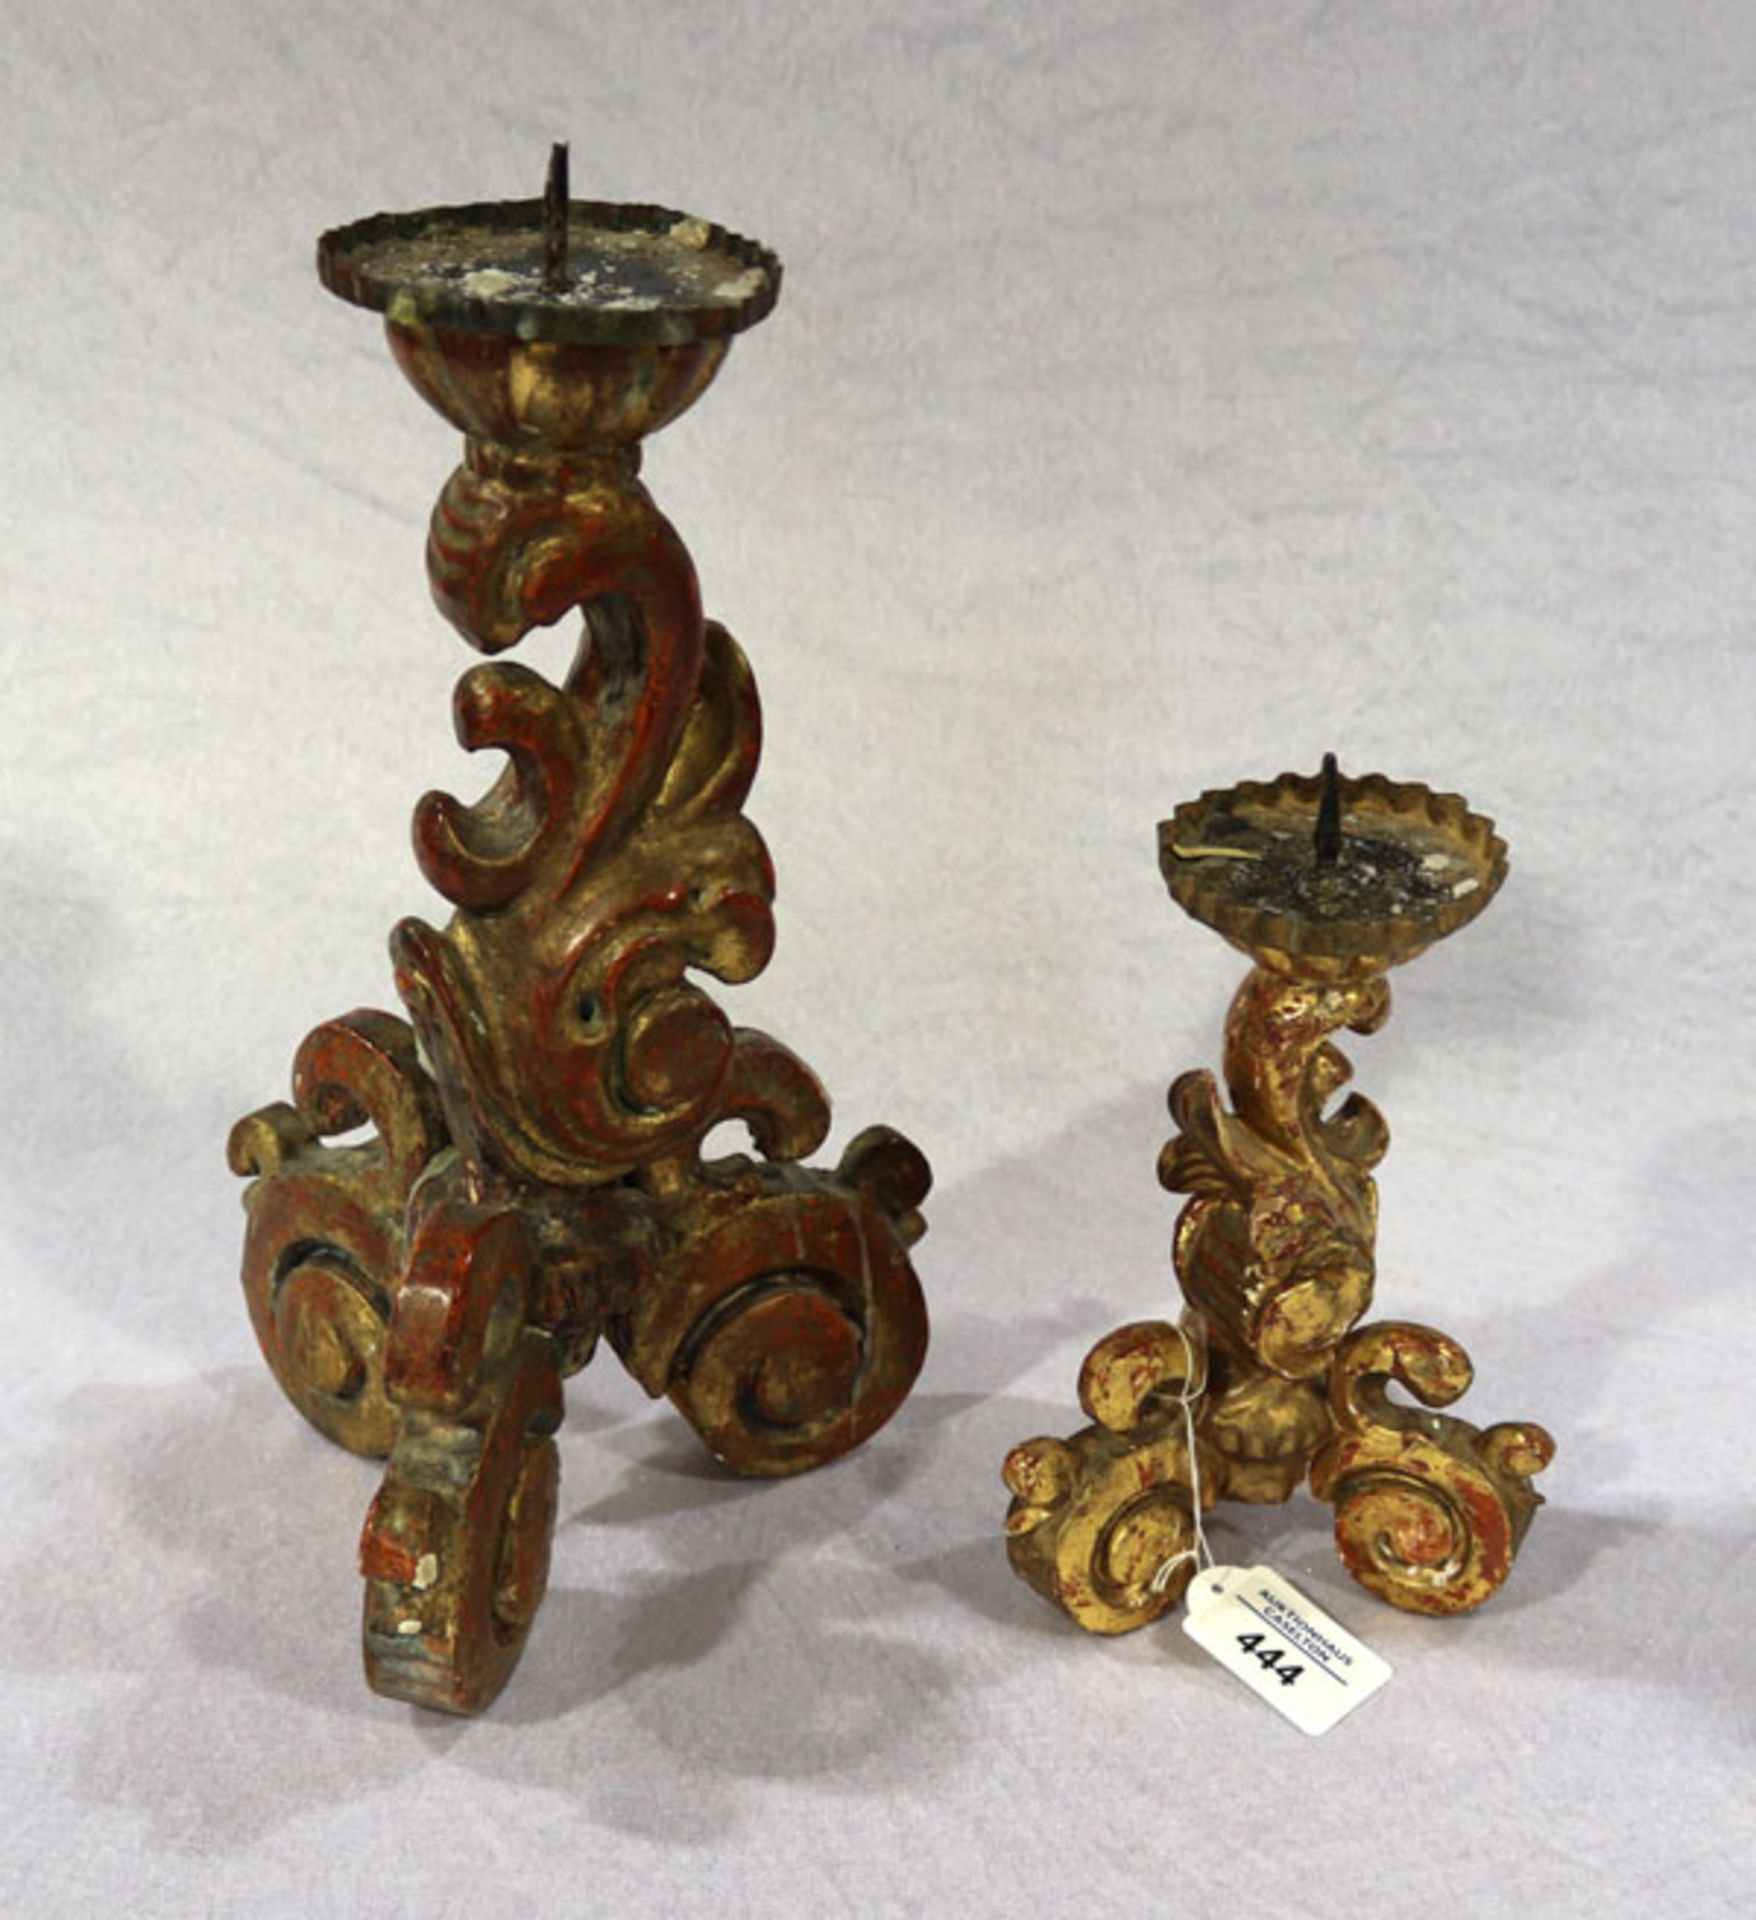 2 Holz Kerzenleuchter in ähnlichem Dekor, Goldfassung, H 22/34 cm, Fassung berieben und teils